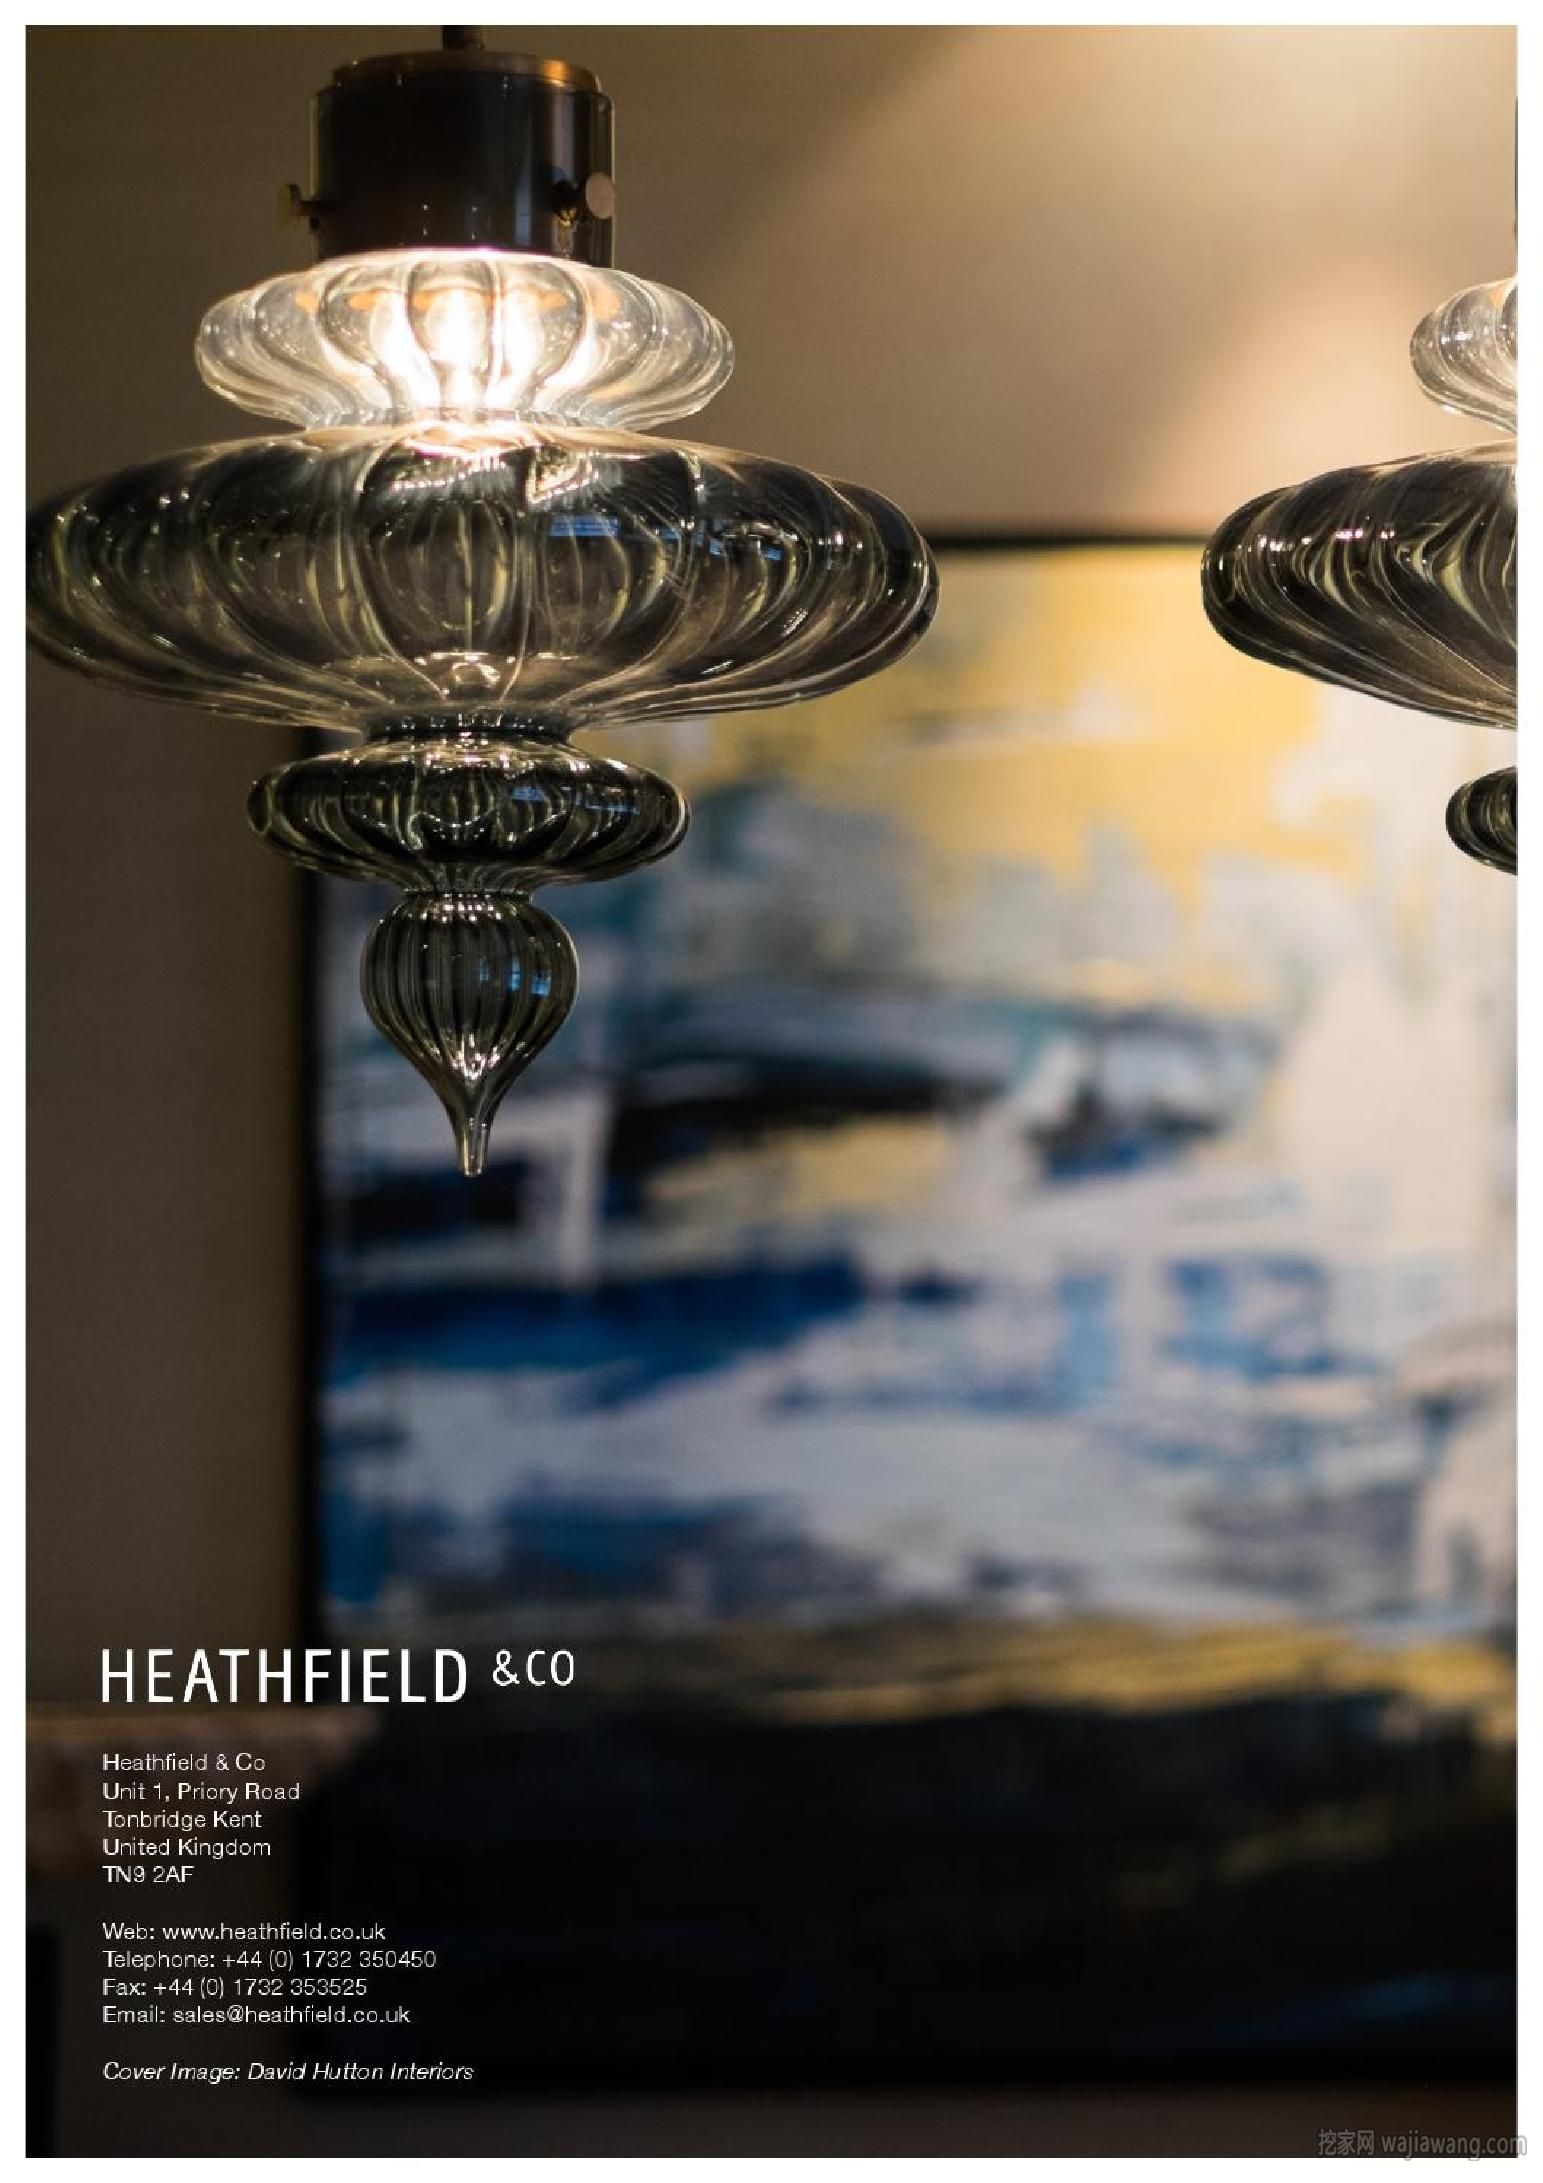 灯饰设计 Heathfield 2015年欧美室内台灯及吊灯设计(图)